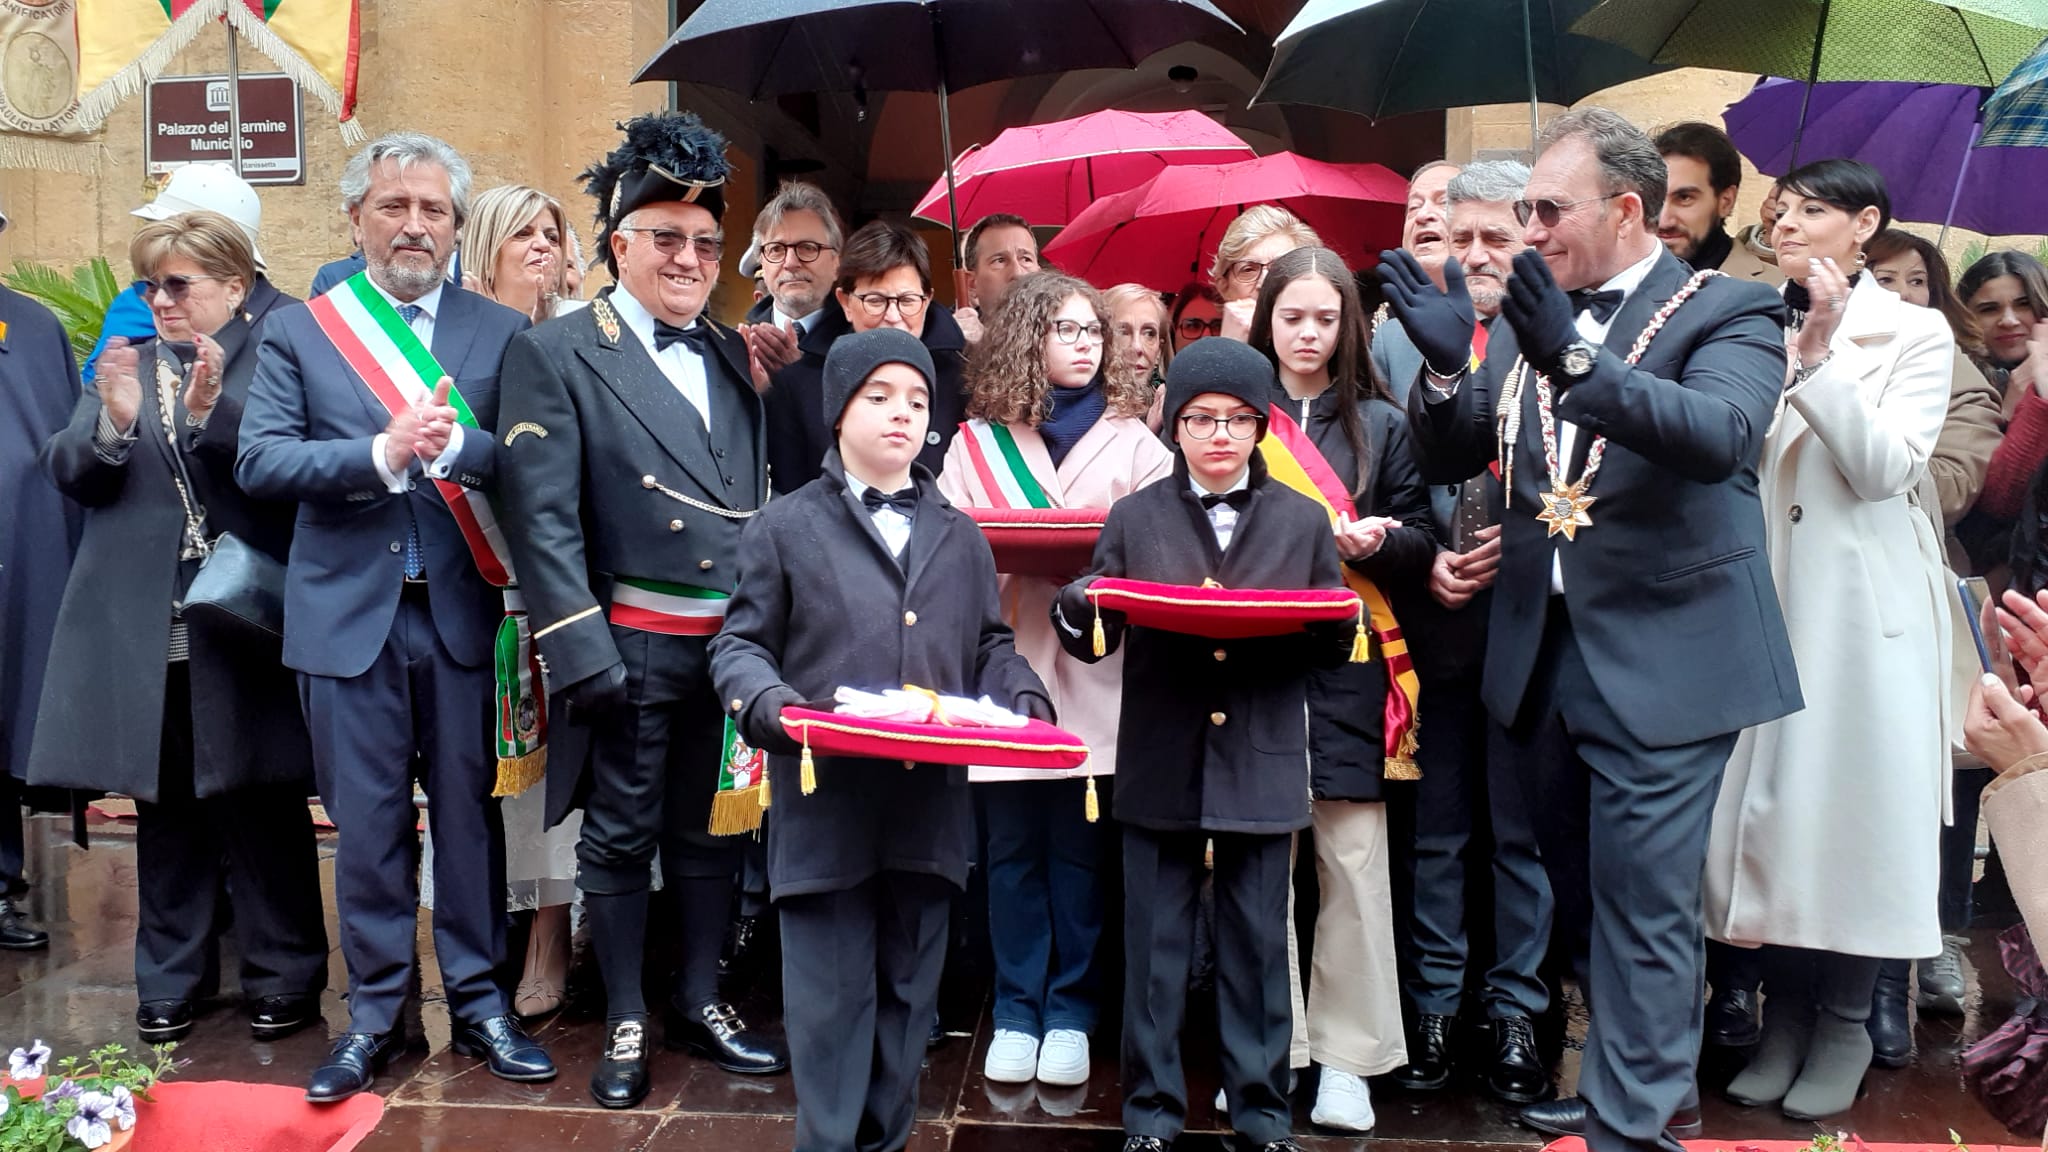 Caltanissetta, Real Maestranza: il sindaco consegna le chiavi al Capitano, neanche la pioggia “ferma” la tradizione